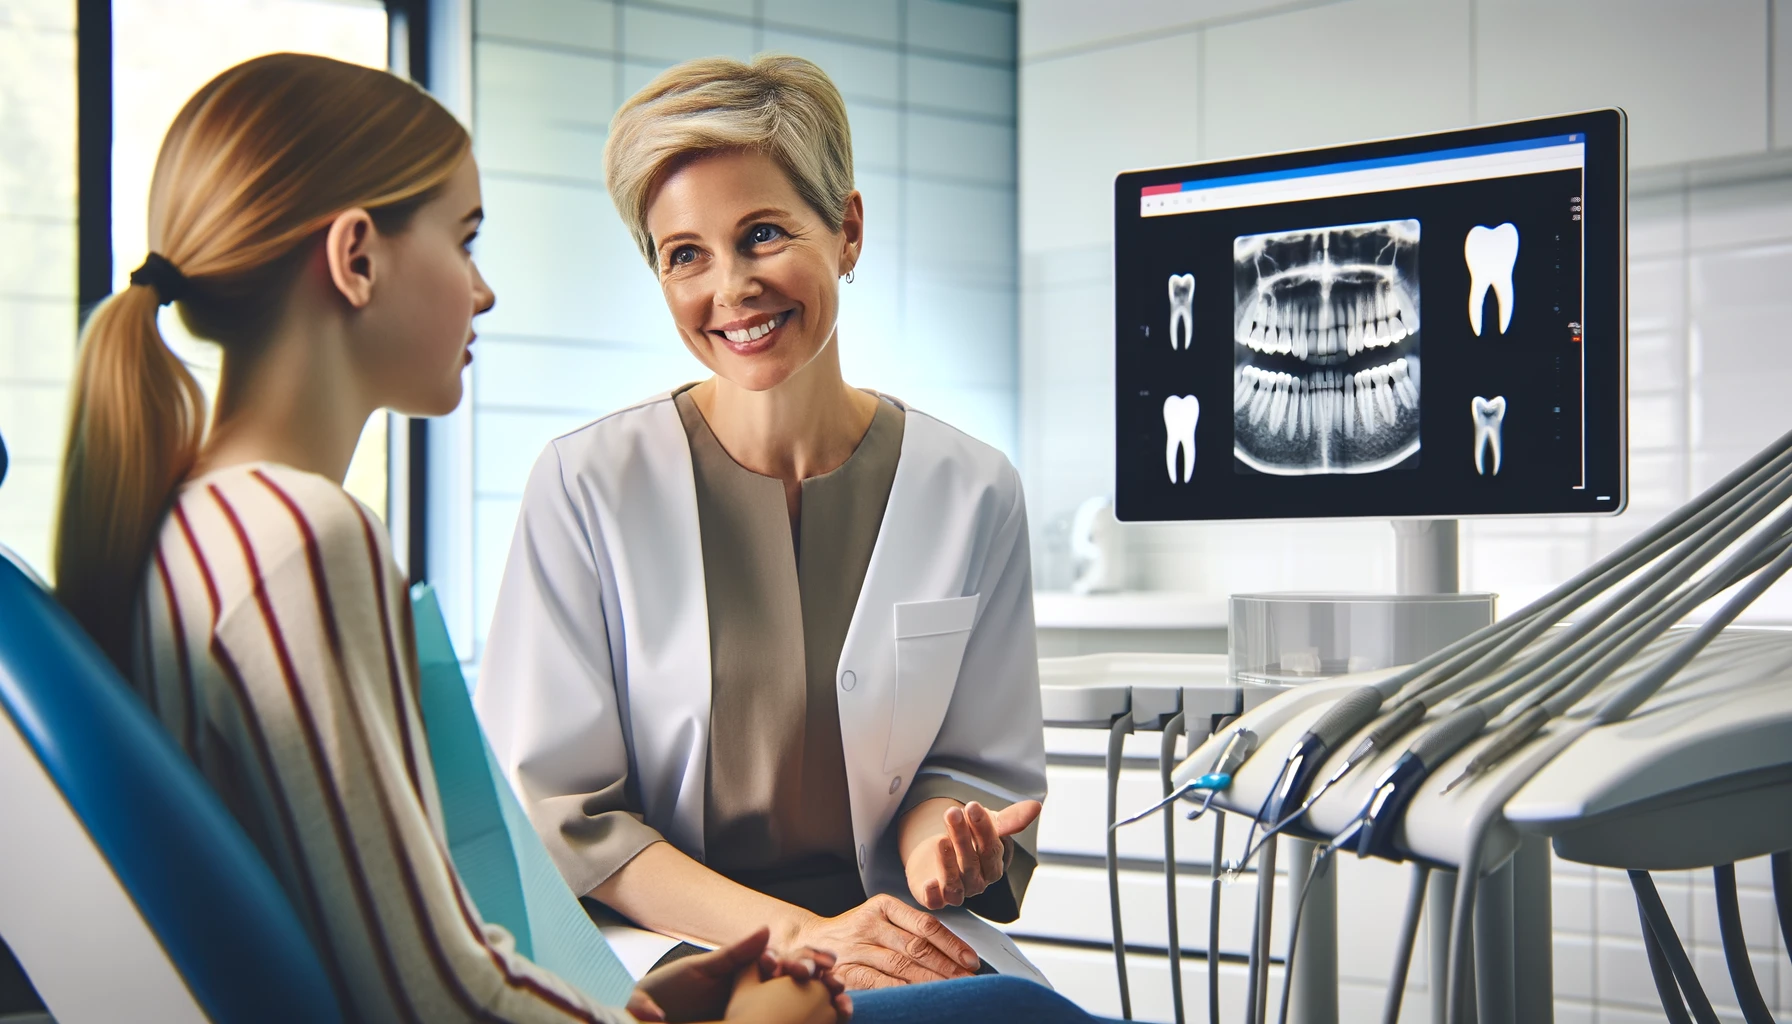 Tannlege forklarer tannuttrekning til ung kvinne, viser røntgenbilde.